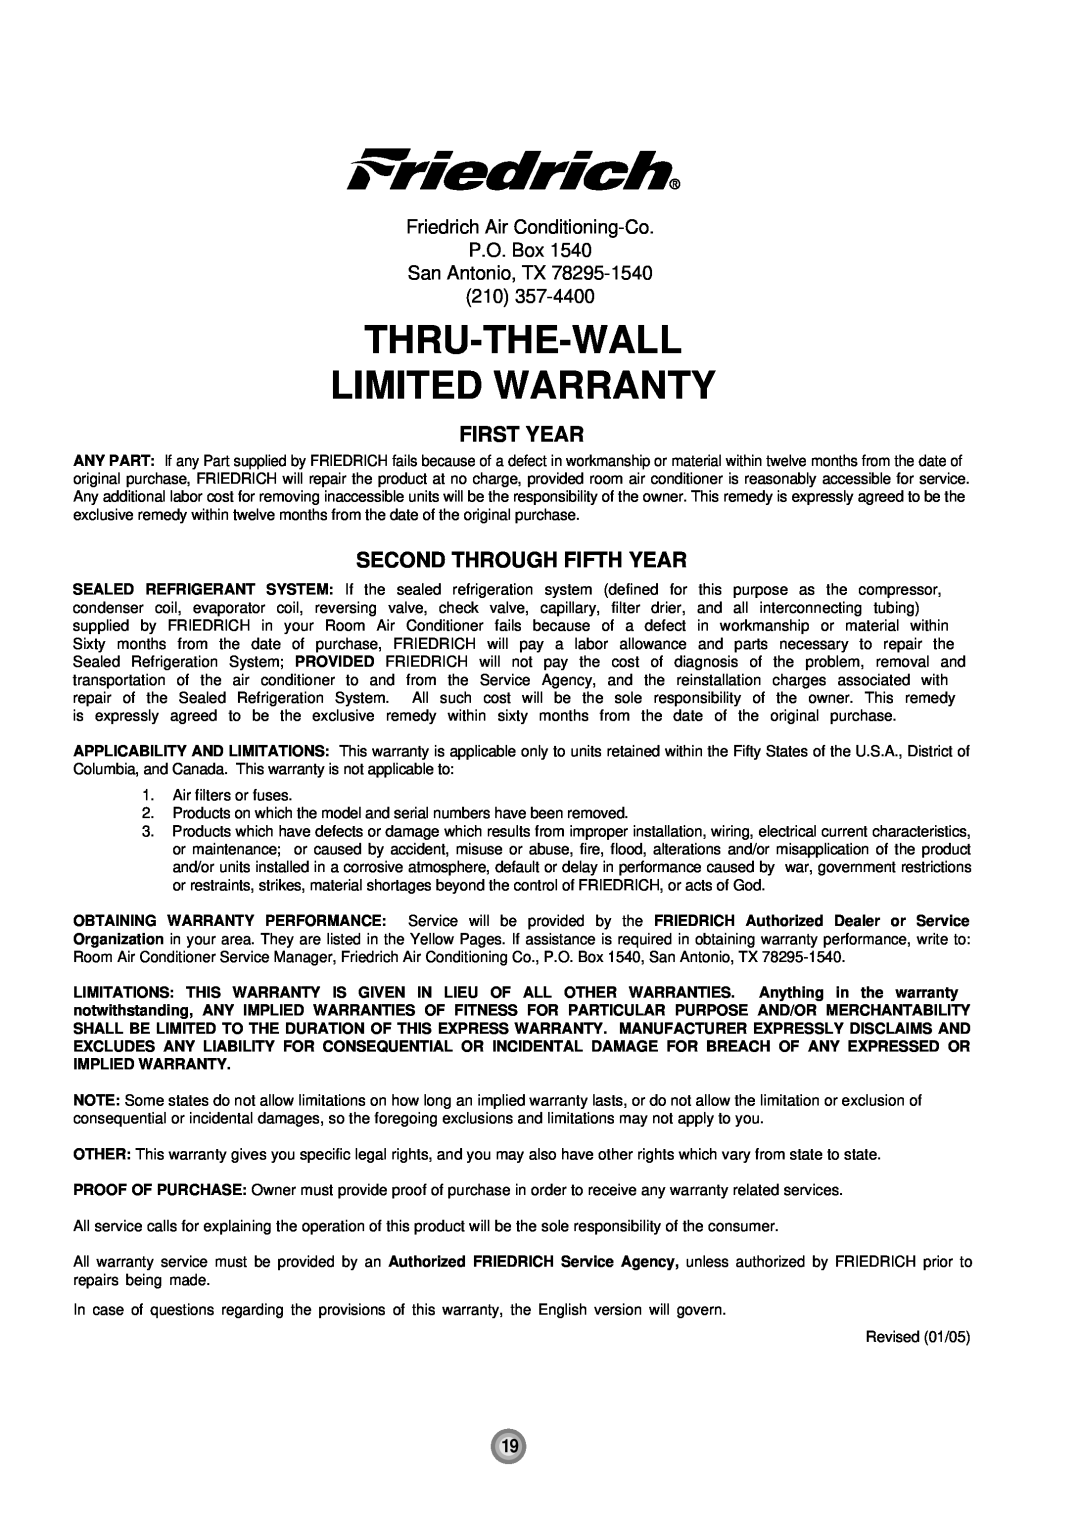 Friedrich UE10, UE12, UE08 manual First Year, Second Through Fifth Year, Thru-The-Wall Limited Warranty 